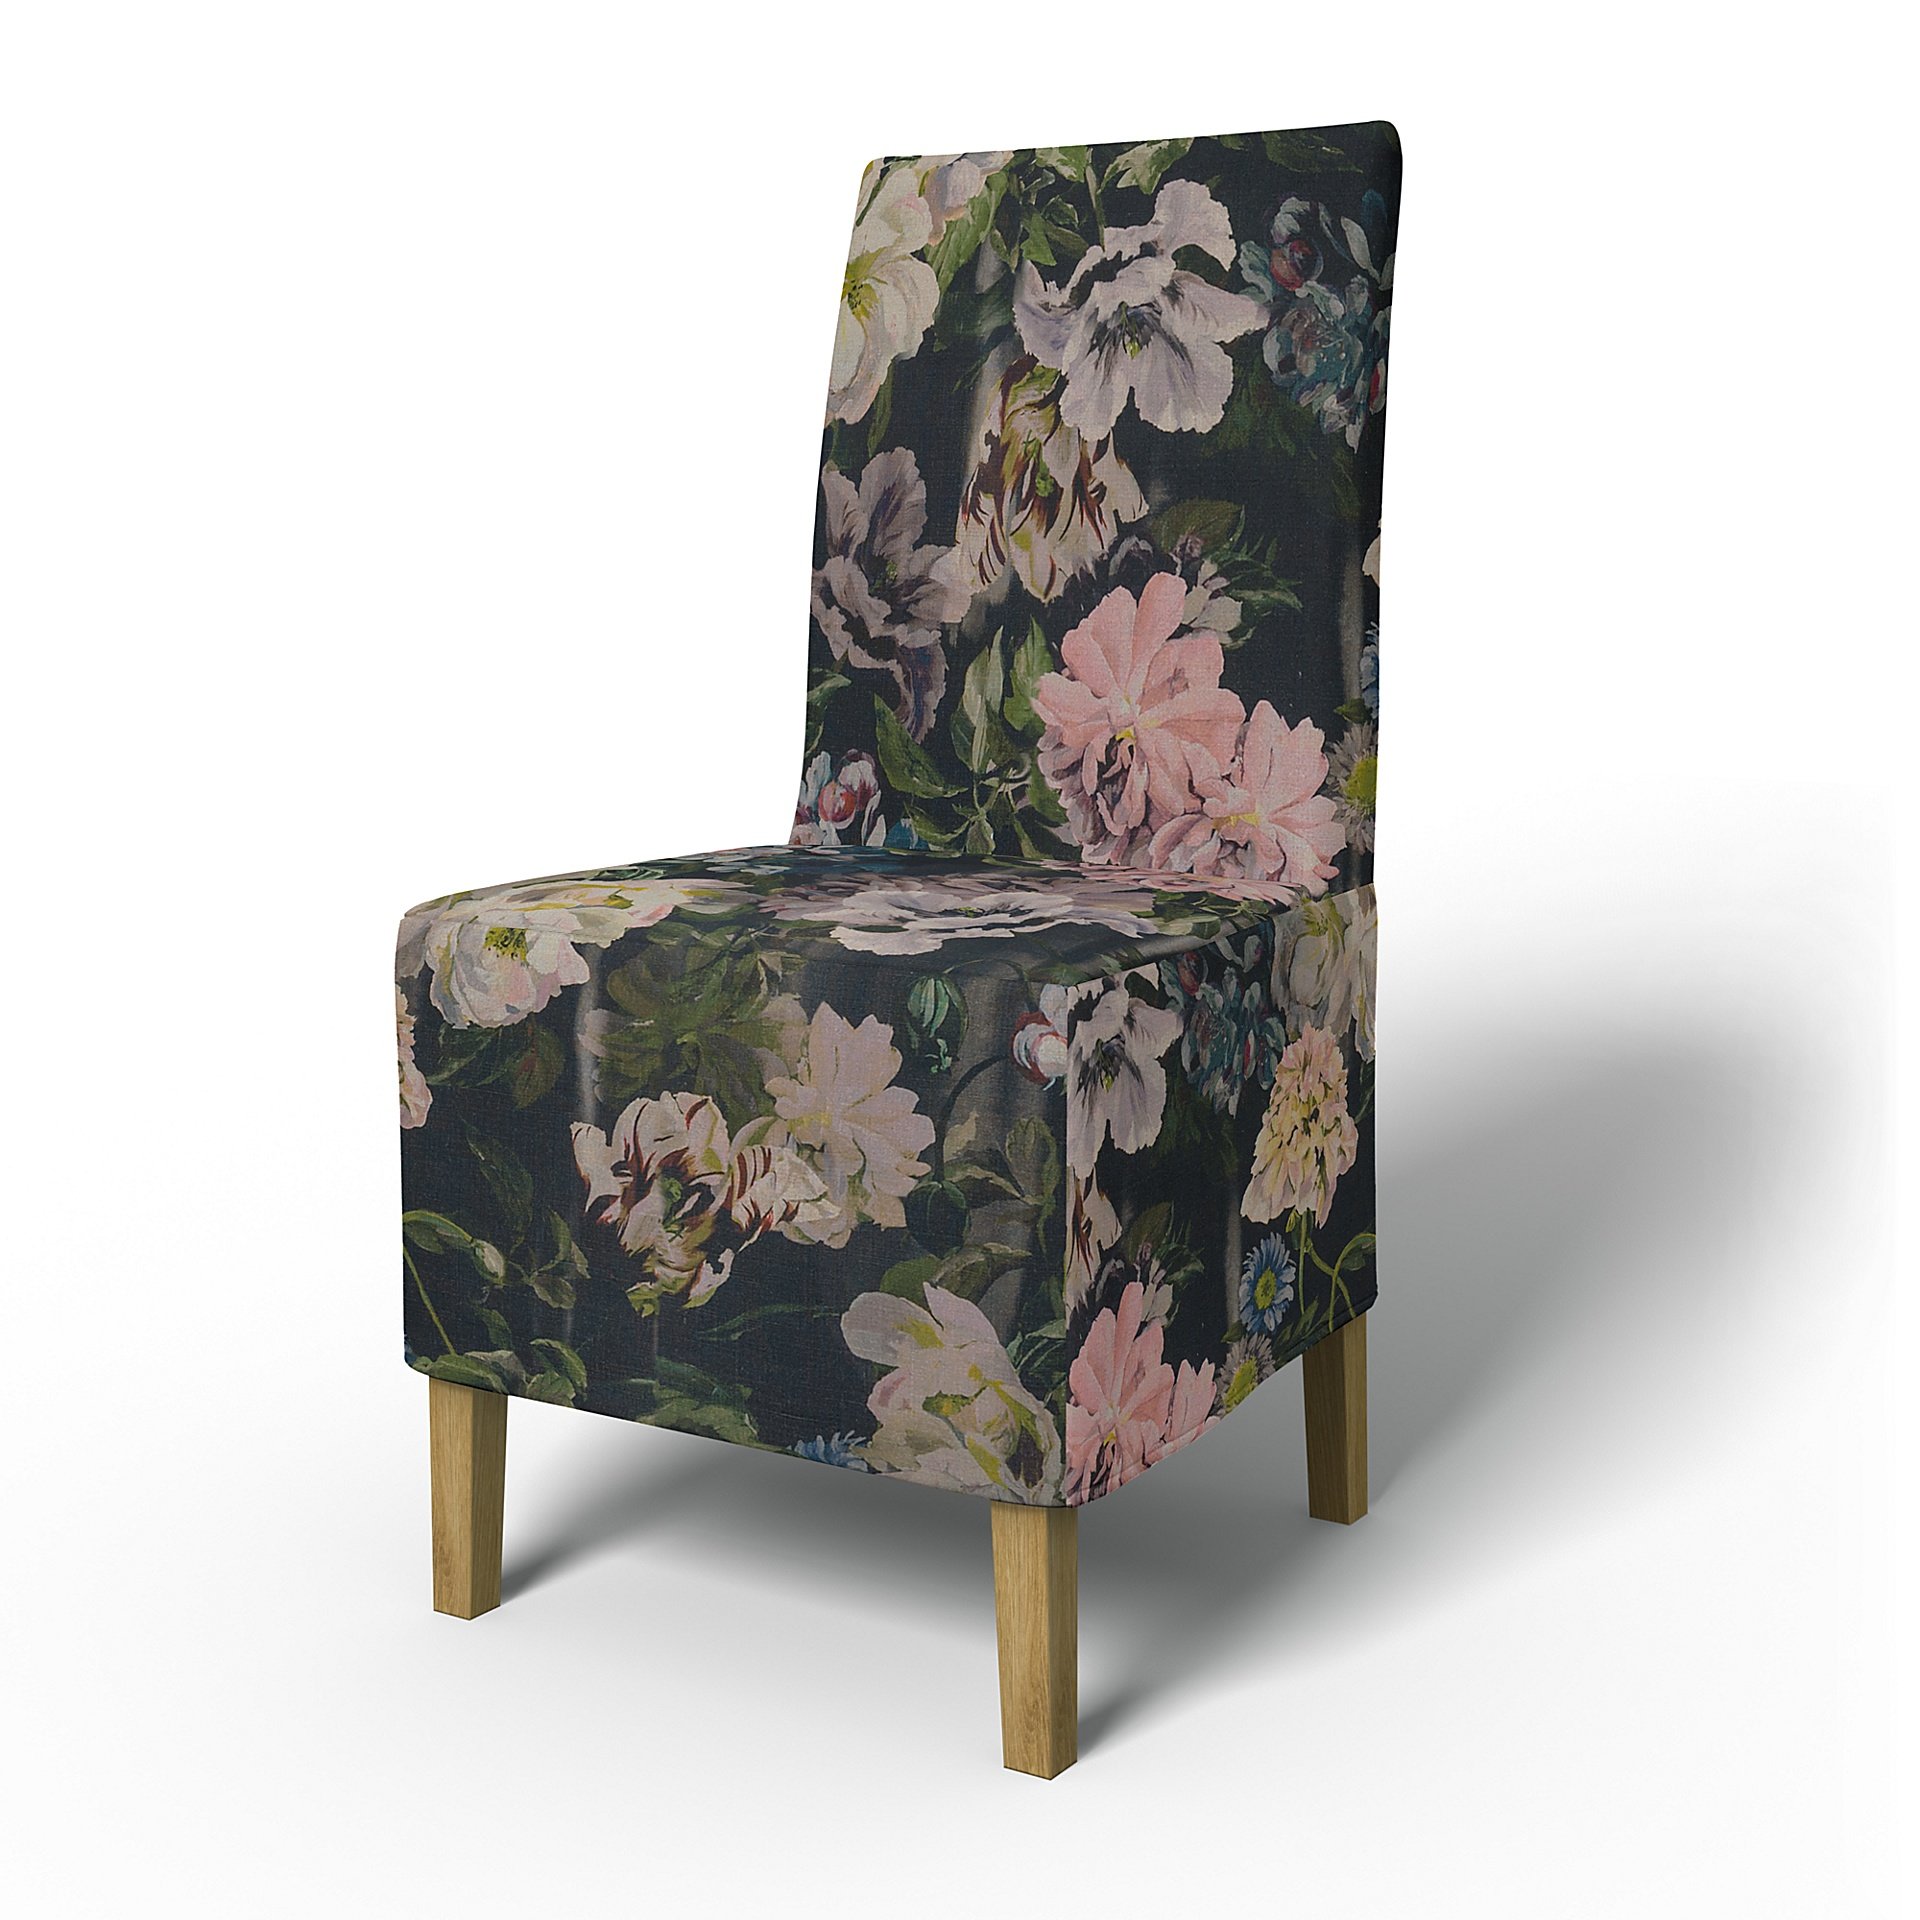 IKEA - Henriksdal Dining Chair Cover Medium skirt (Standard model), Delft Flower - Graphite, Linen -